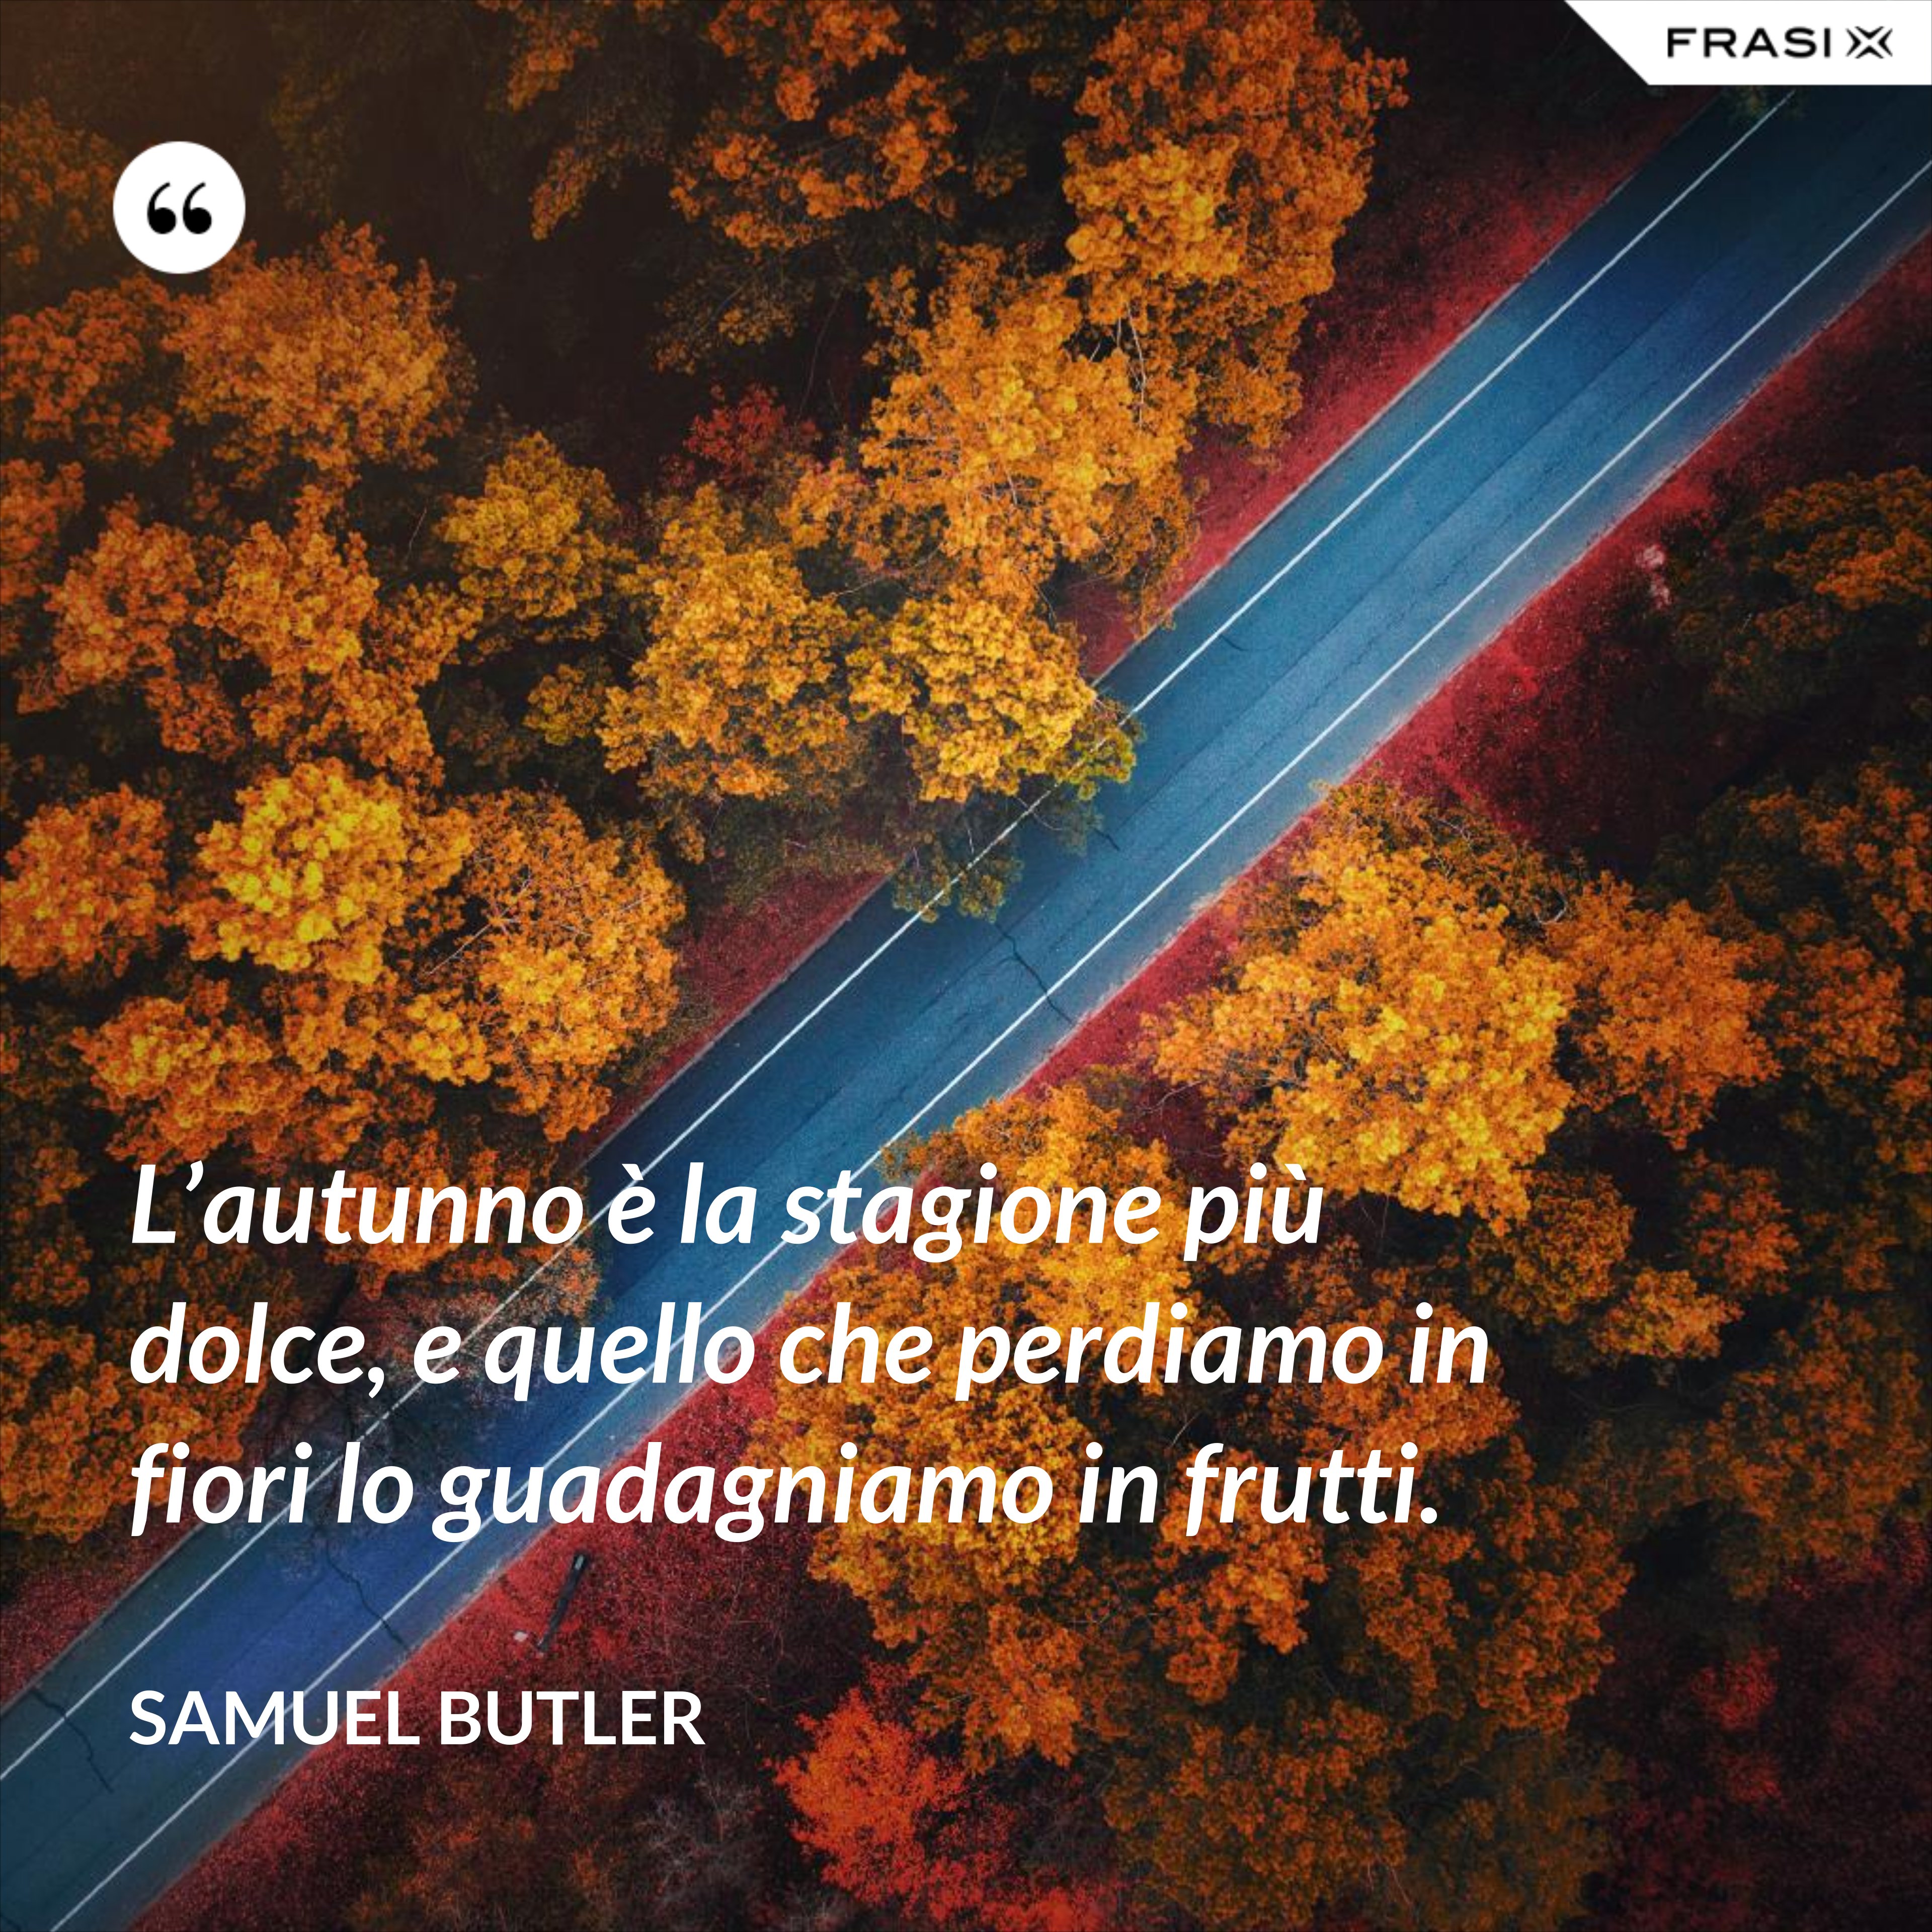 L’autunno è la stagione più dolce, e quello che perdiamo in fiori lo guadagniamo in frutti. - Samuel Butler